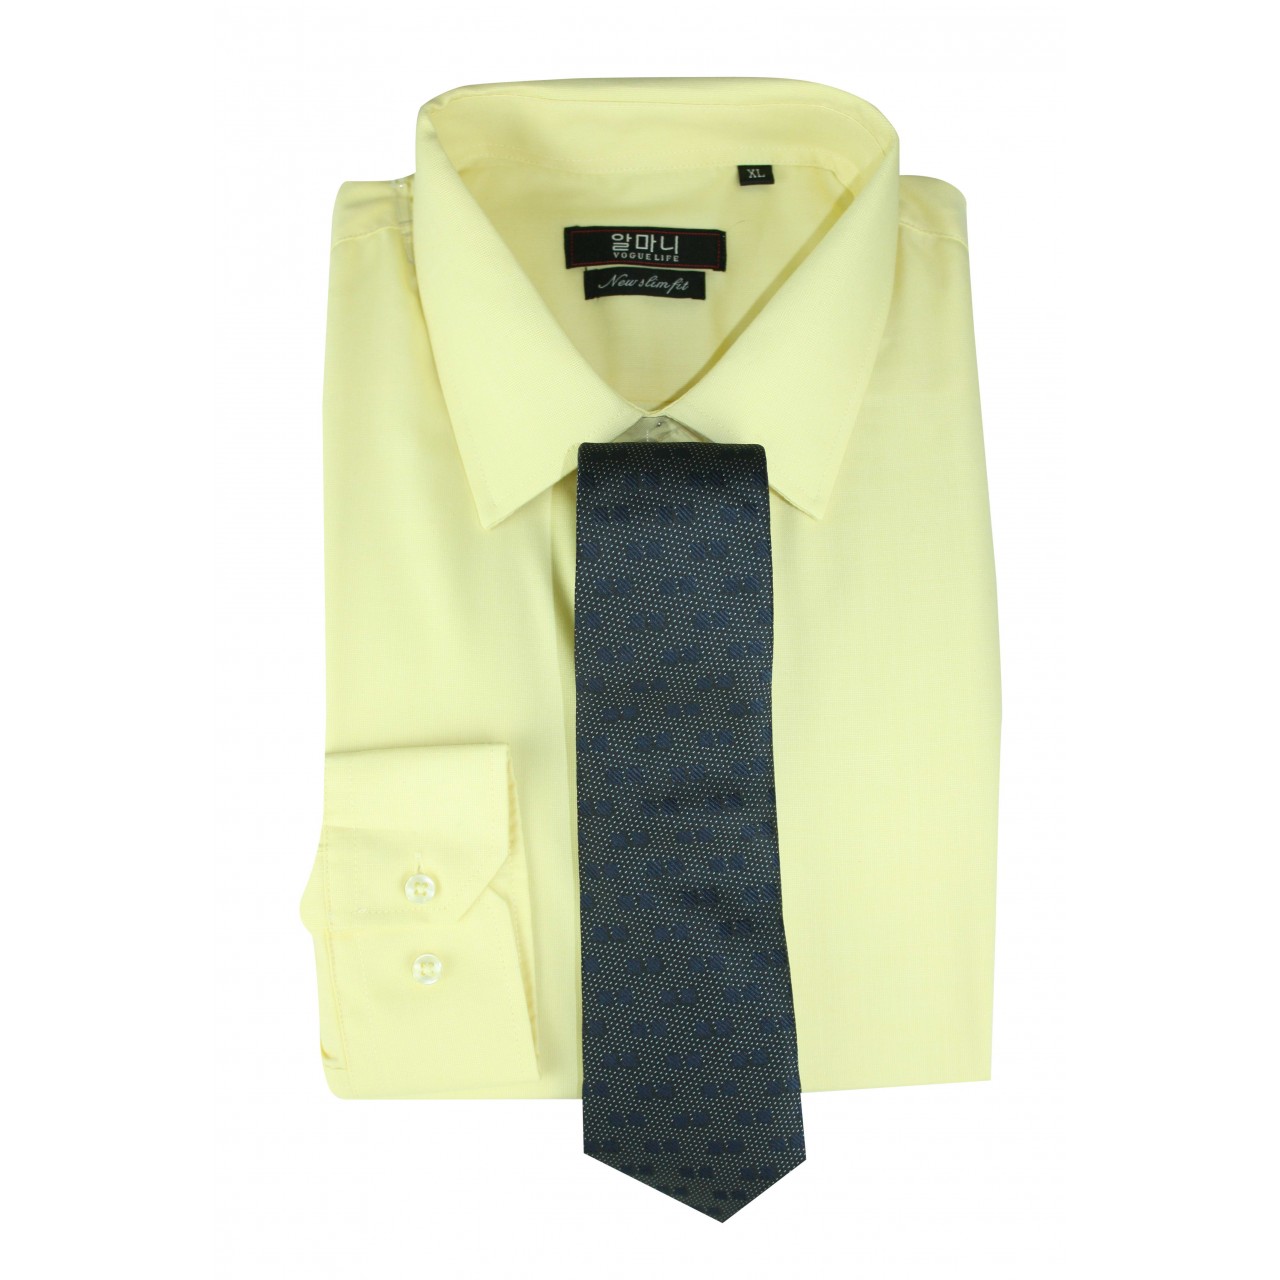 Men's Formal basic VOGUE LIFE Flat Yellow shirt- Set